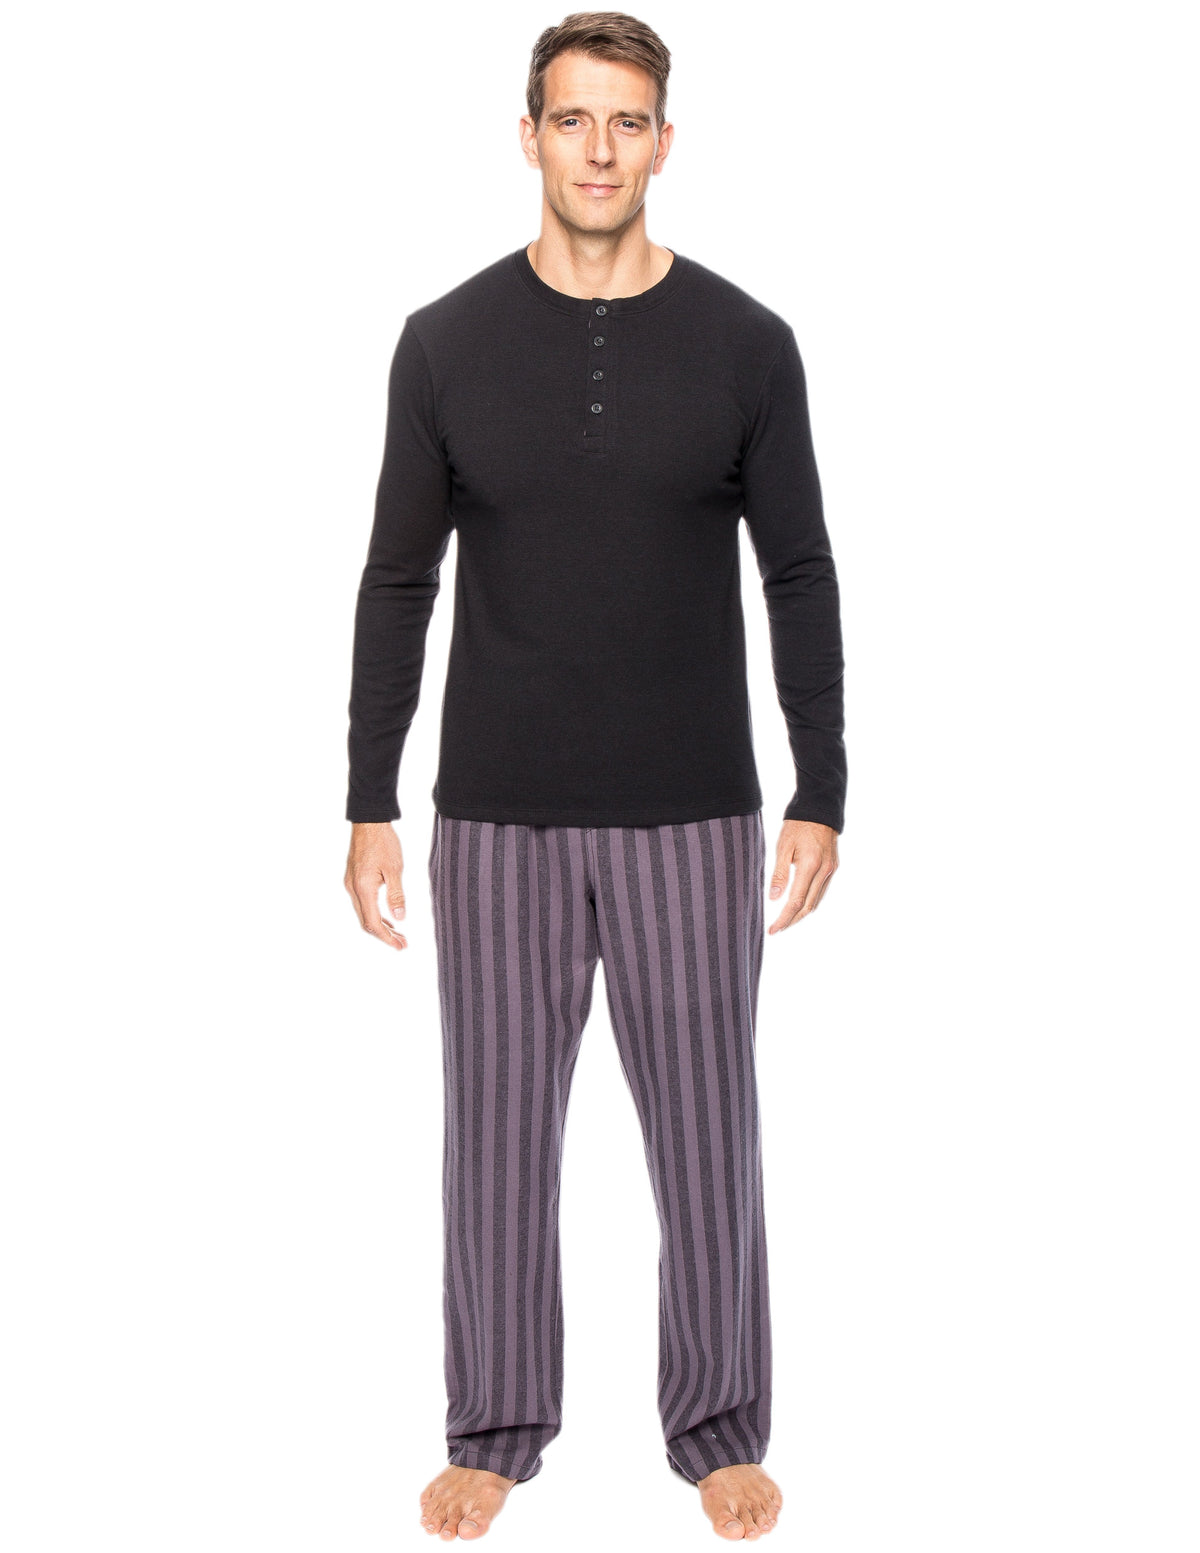 Mens Premium 100% Cotton Flannel Lounge Set - Stripes Black/Grey